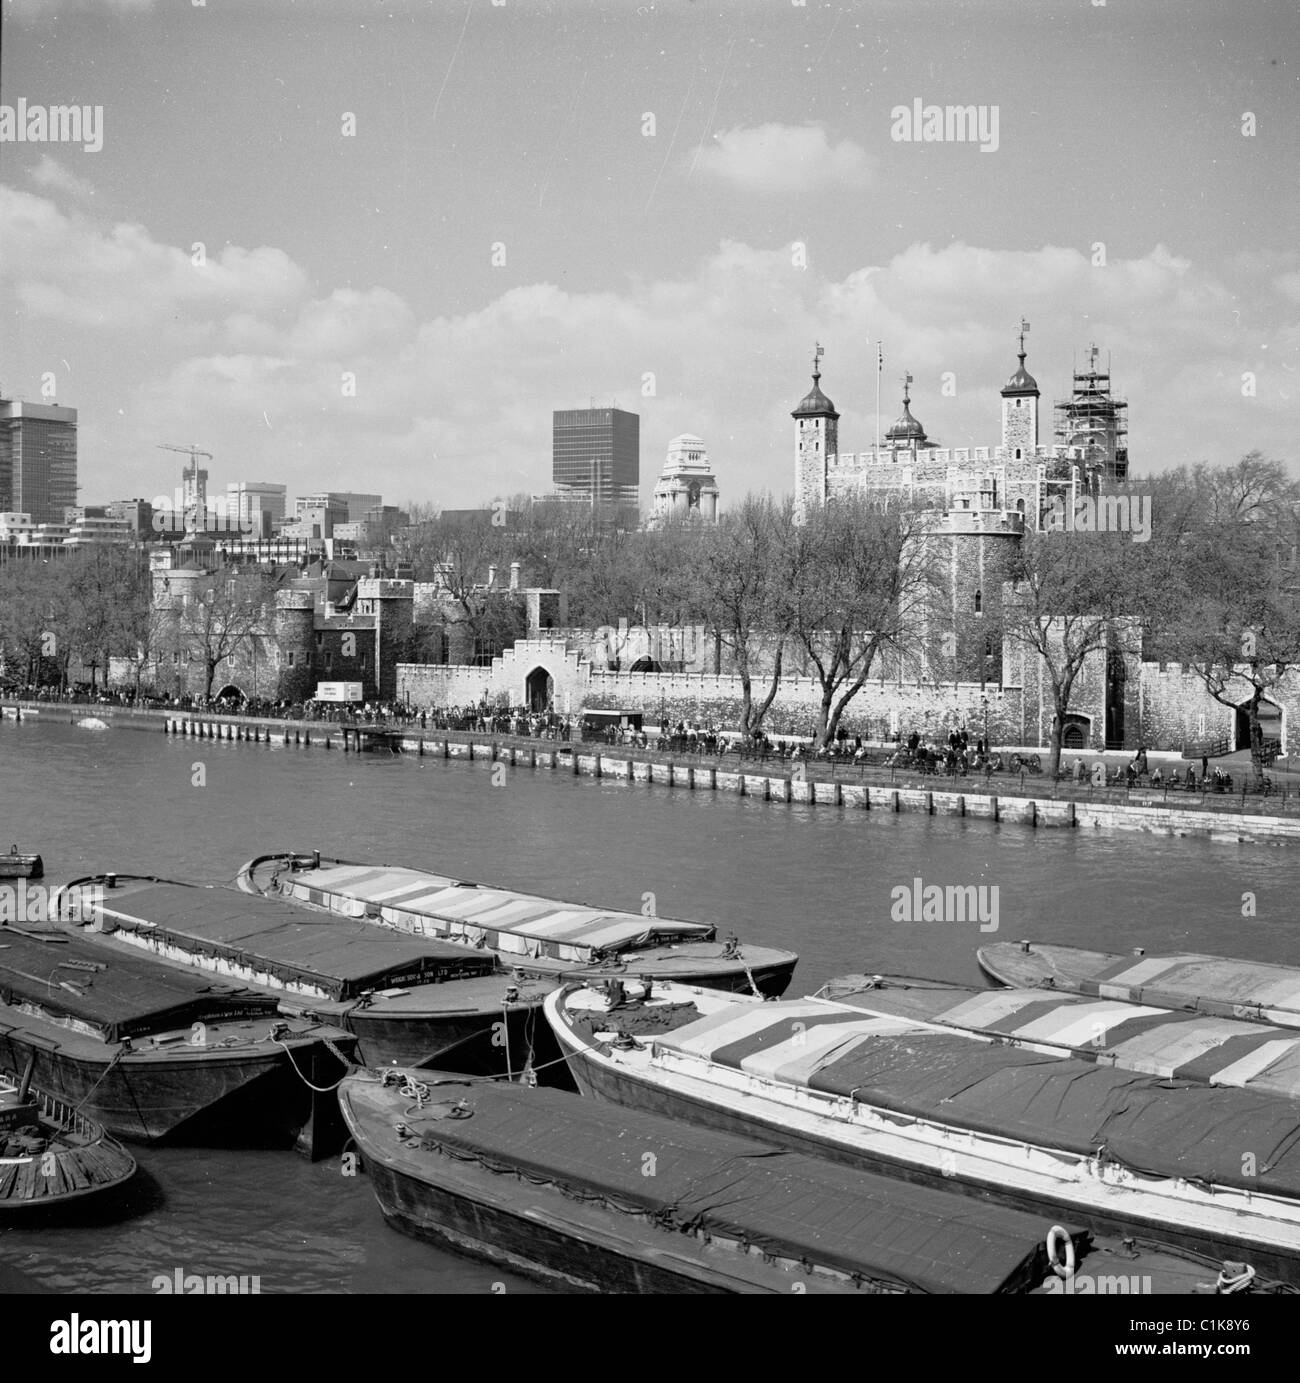 1950, vista sul Tamigi che mostra il famoso monumento storico, la Torre di Londra, una fortezza risalente al 1078 e sede dei Gioielli della Corona Britannica. Foto Stock